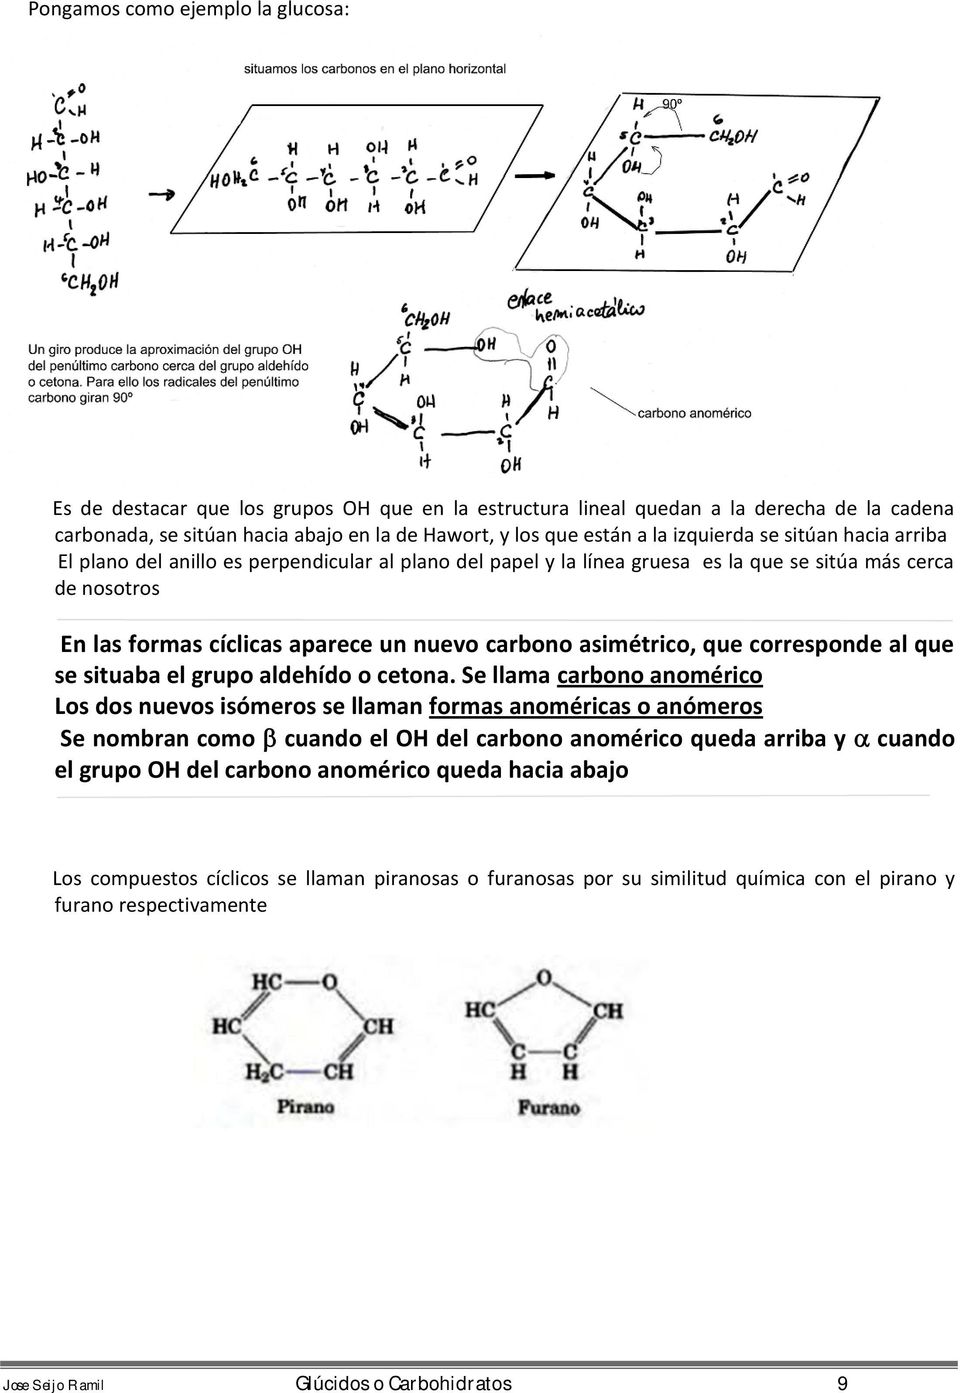 asimétrico, que corresponde al que se situaba el grupo aldehído o cetona.